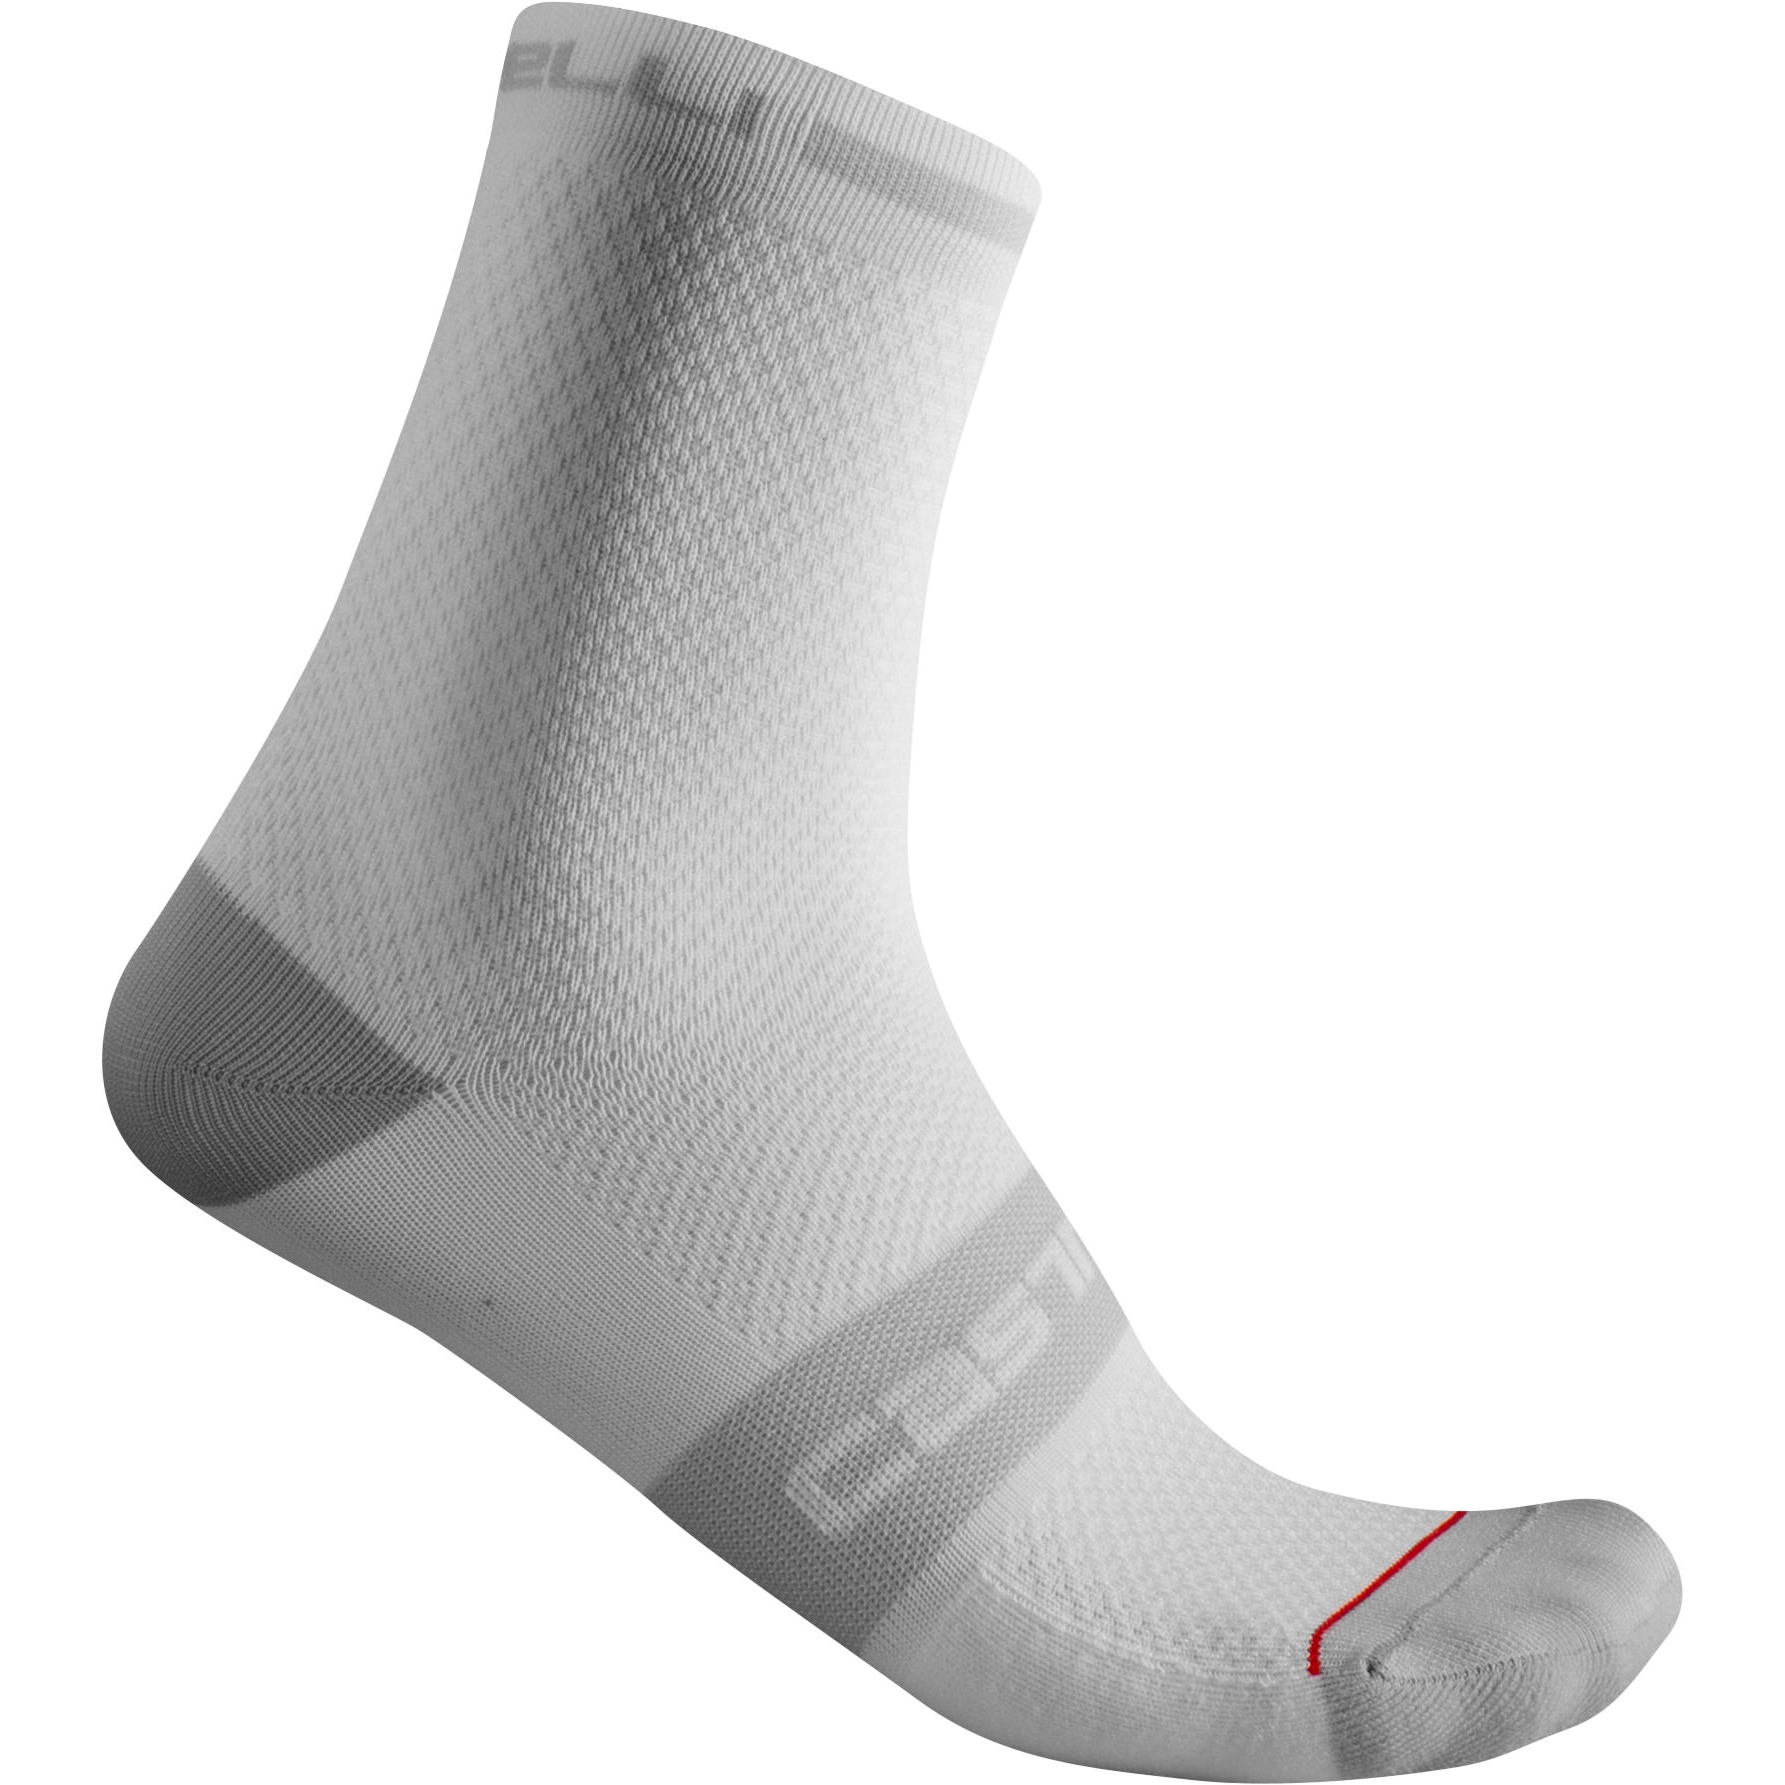 Produktbild von Castelli Superleggera T 12 Socken Herren - weiß 001